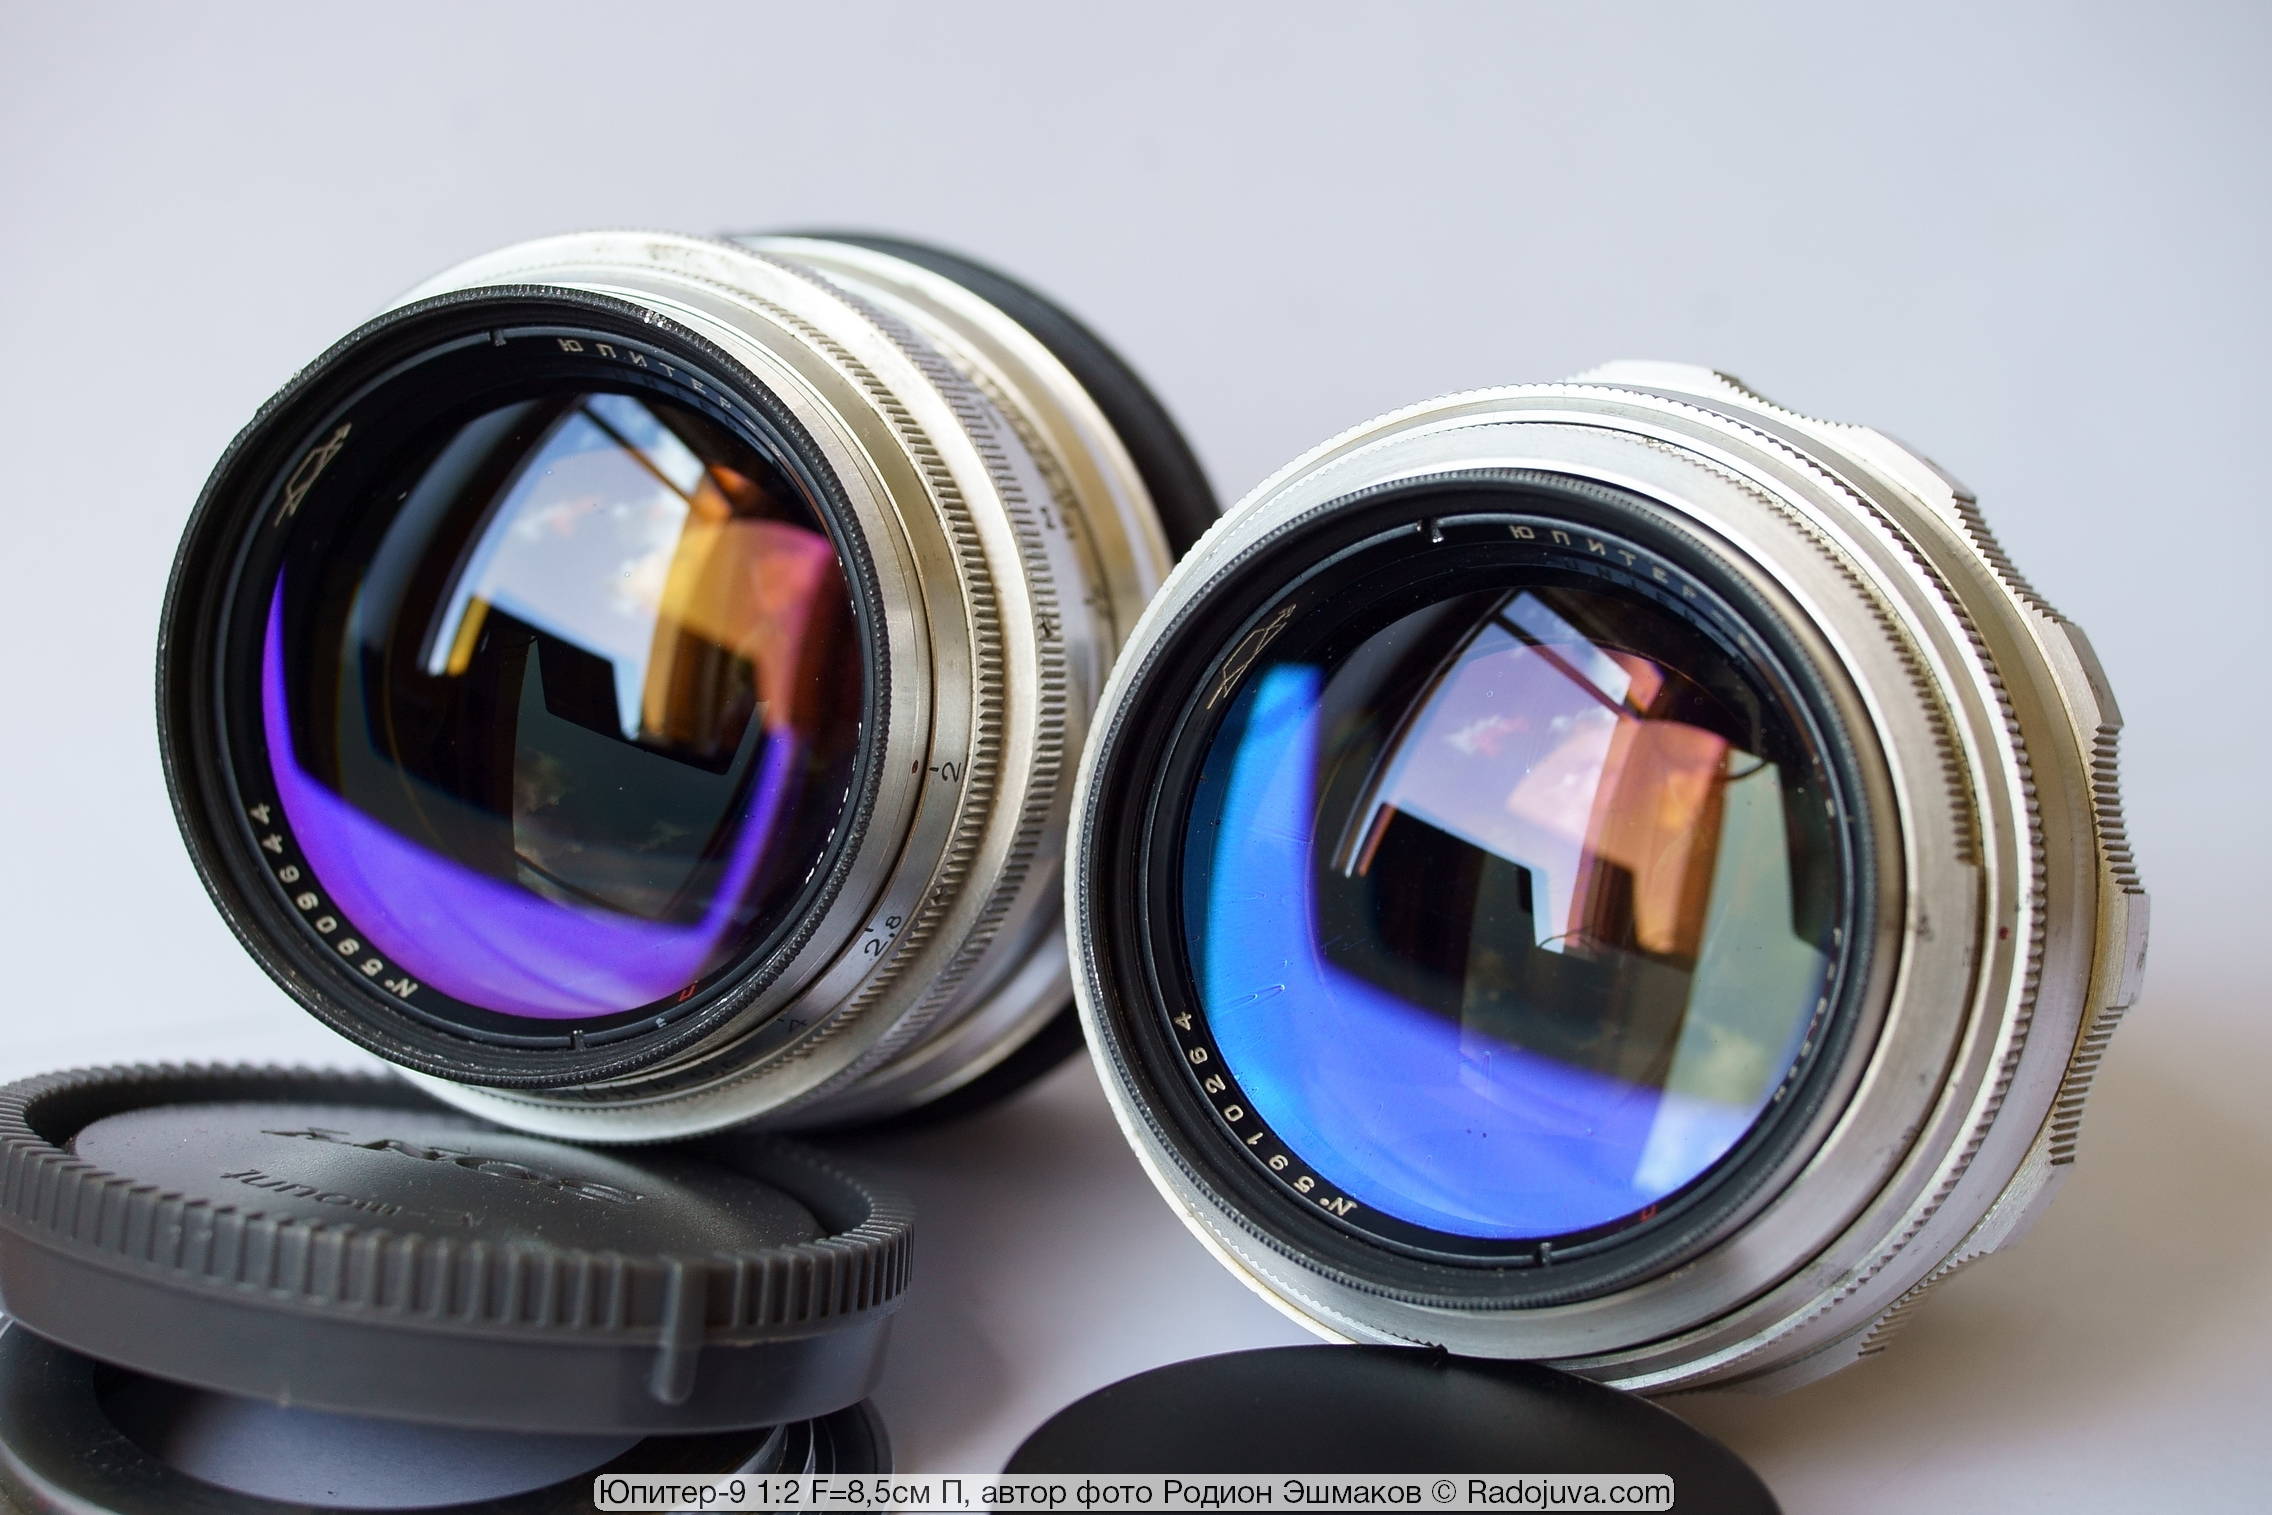 Incluso las lentes del mismo año de fabricación difieren en tonos de iluminación.